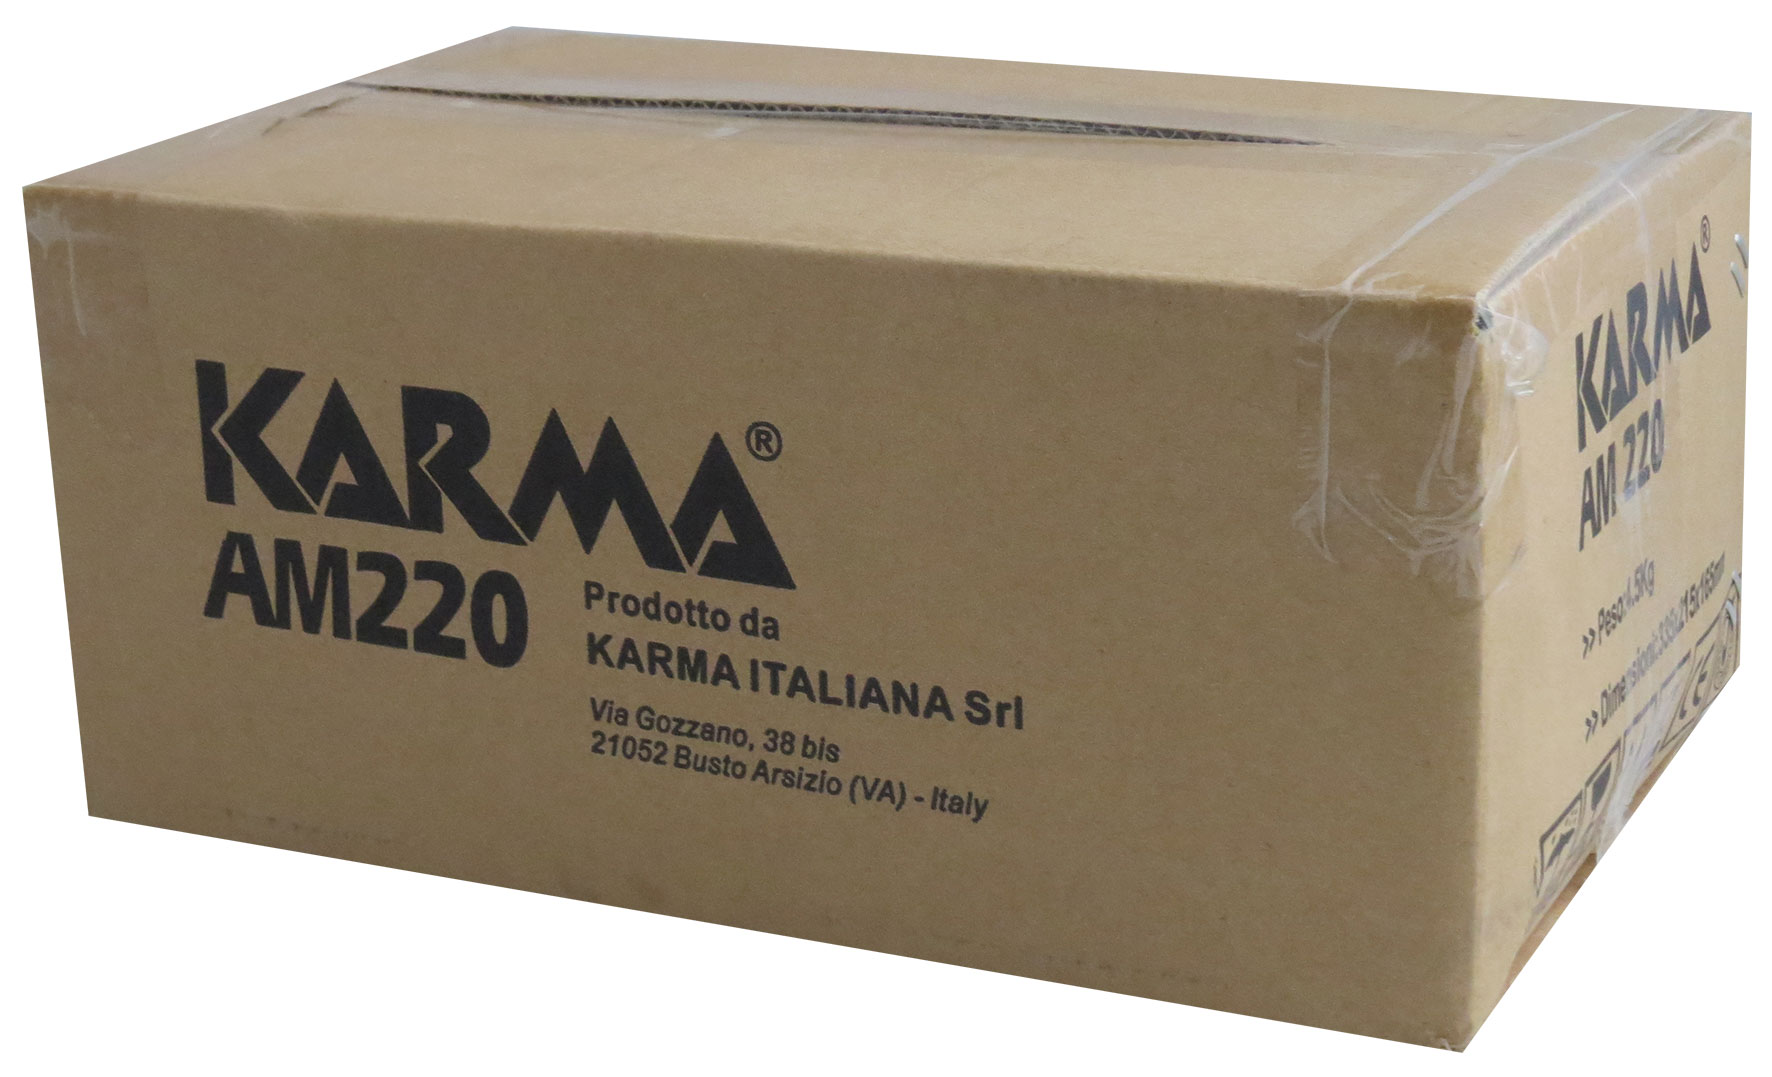 Karma AM 220